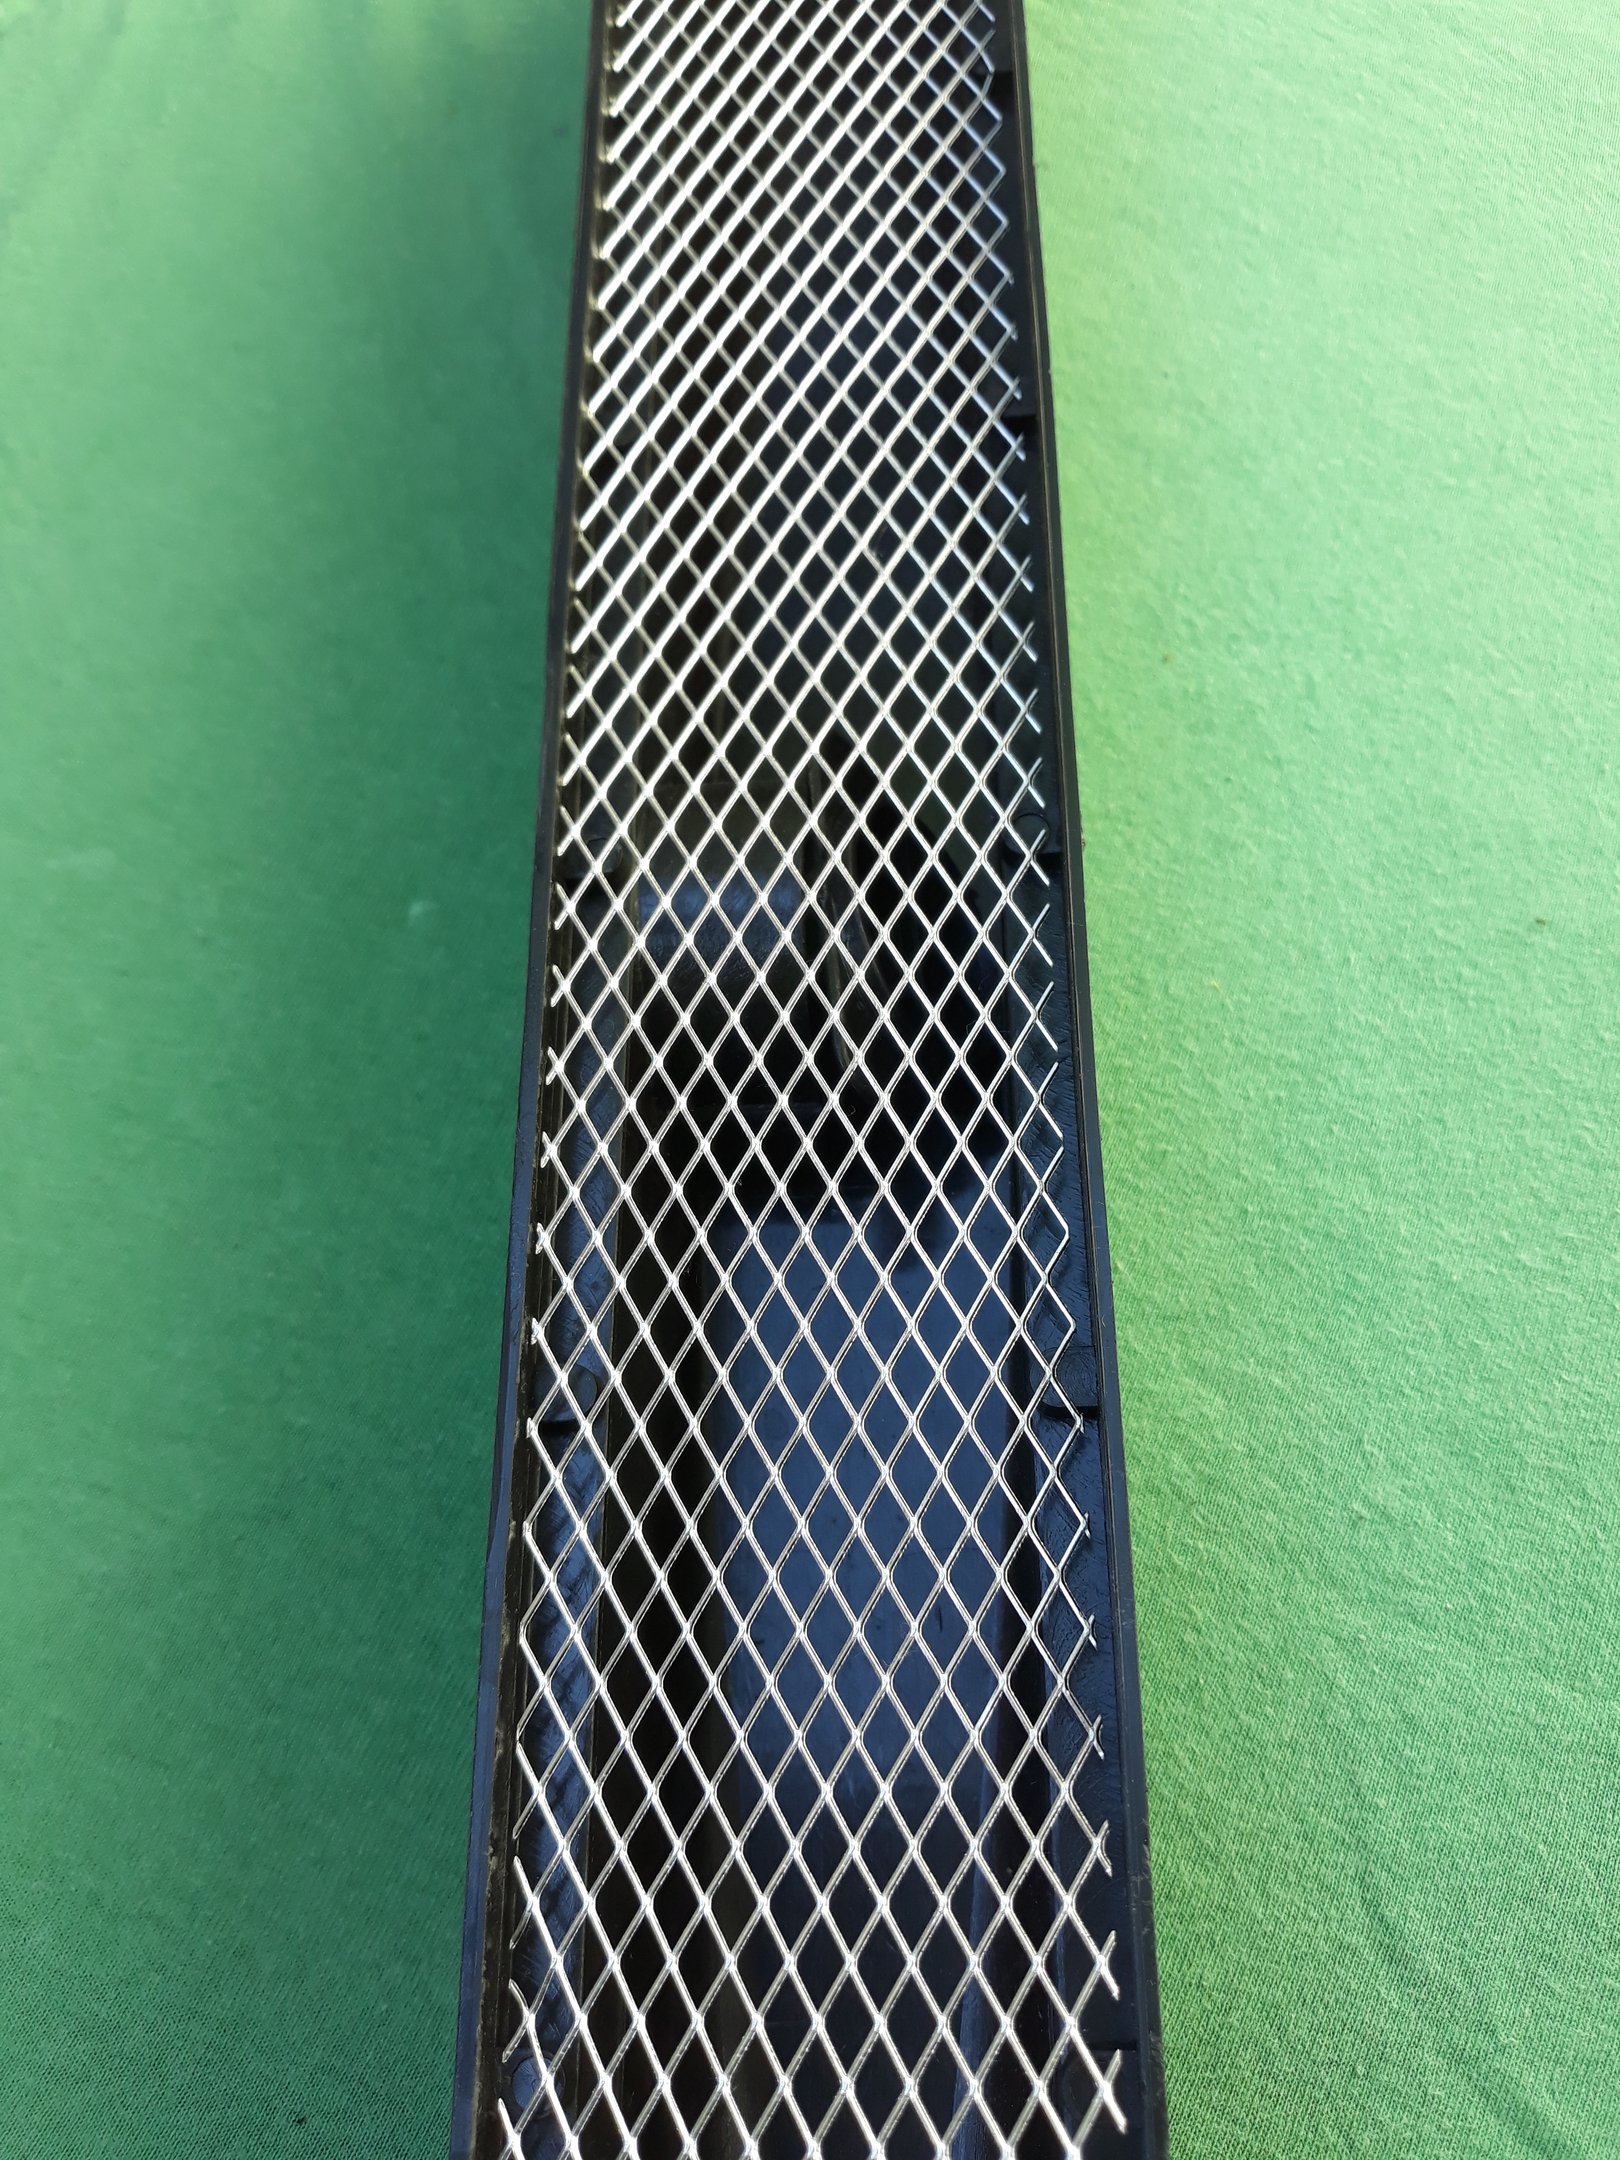 Ralo Linear Invisível 6x50 modelo Cola Piso Porcelanato com Tela Anti Insetos e Coletor Preto - Fico - 2